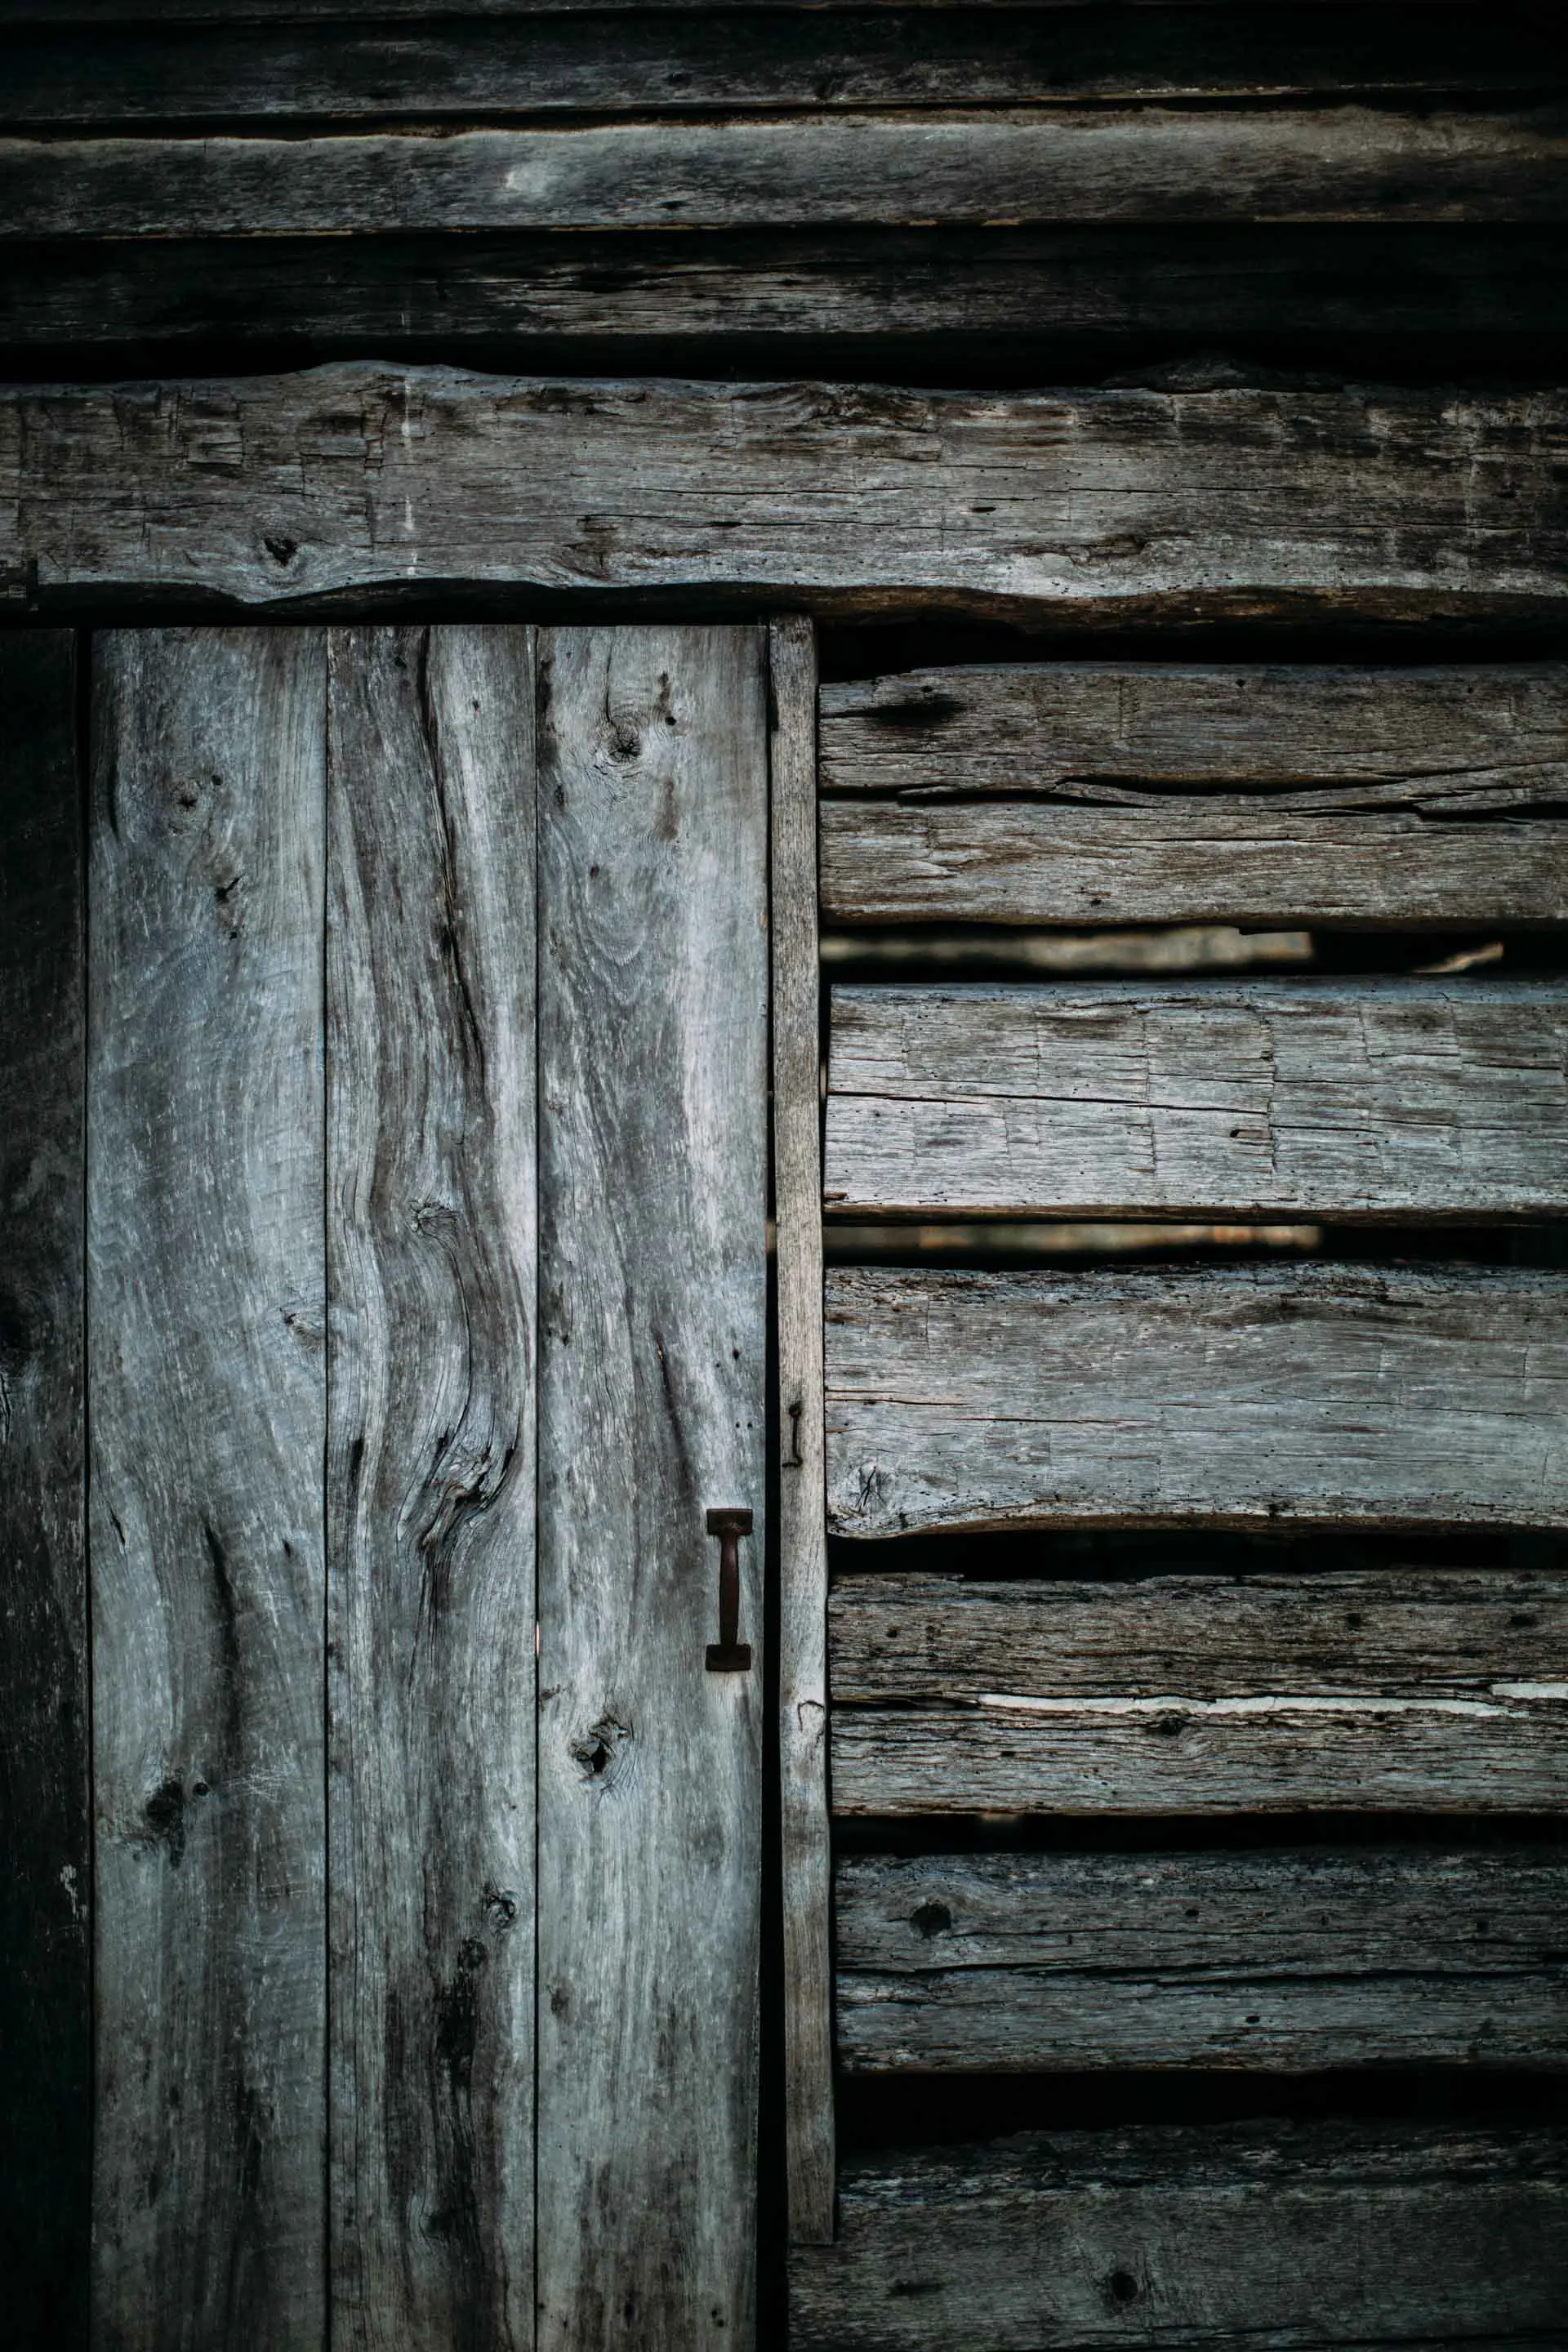 Rustic wood door